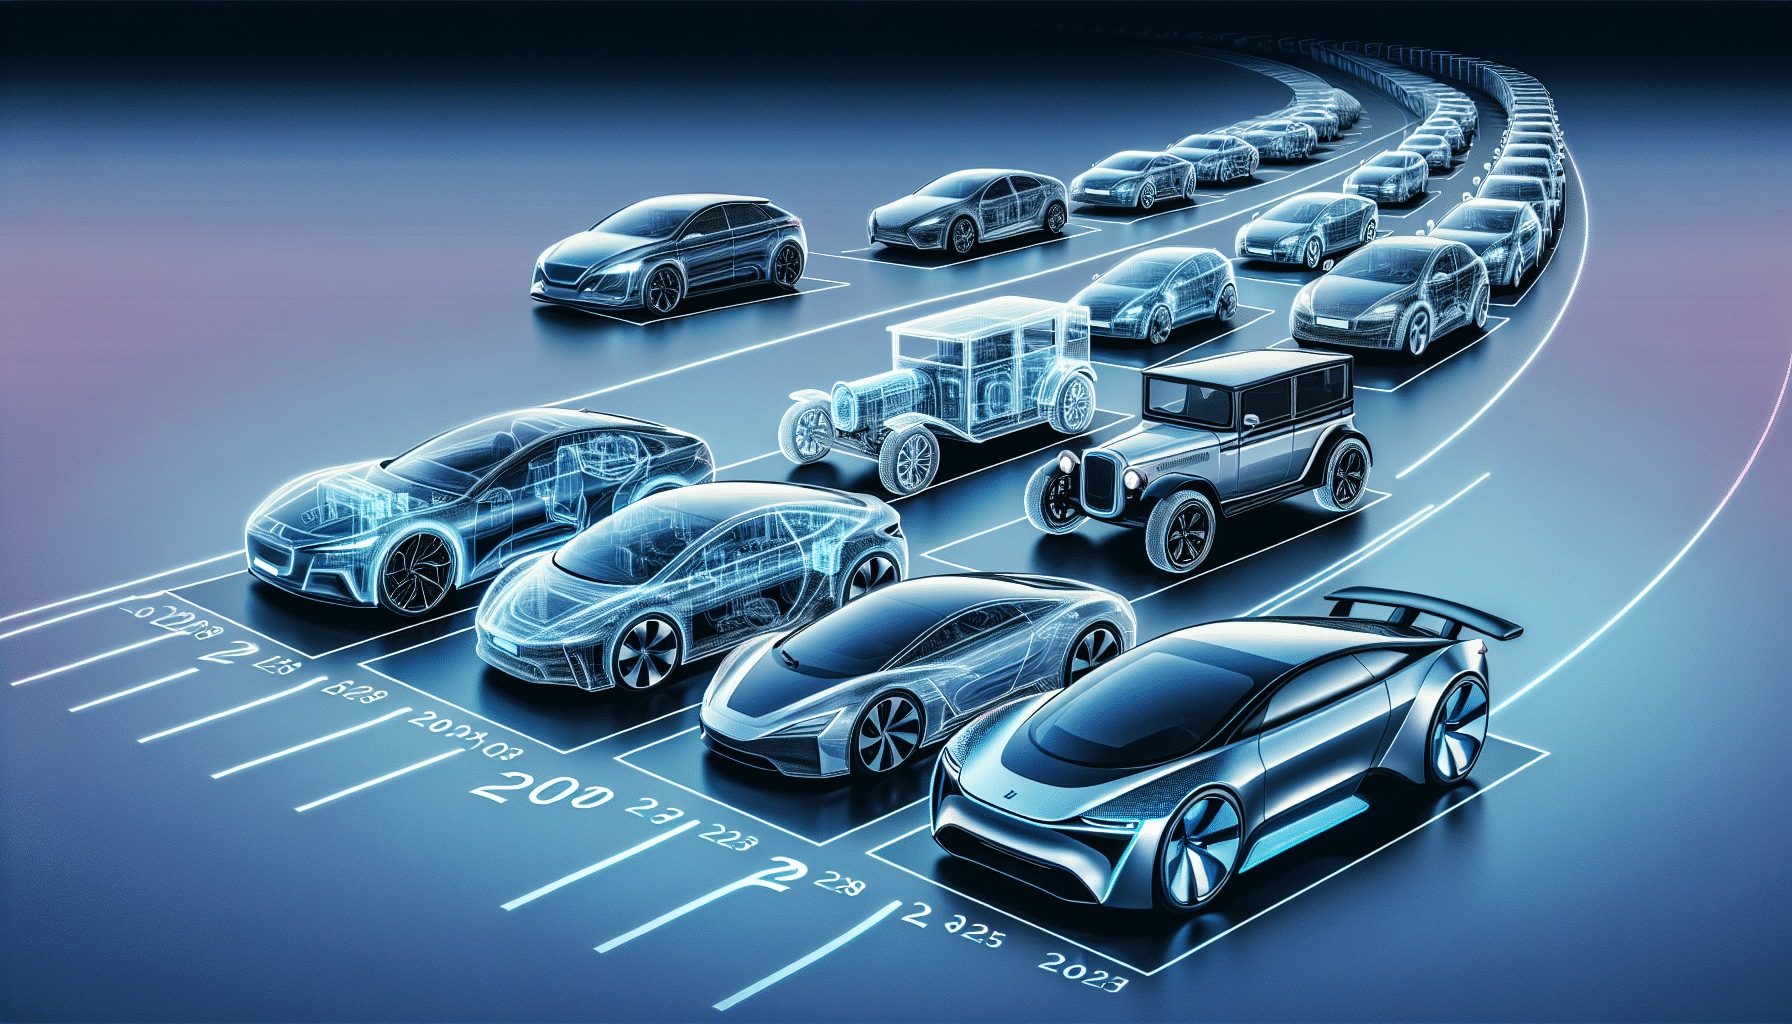 descubre los próximos modelos de coches eléctricos que llegarán al mercado hasta 2025 y prepárate para la revolución en la movilidad sostenible.